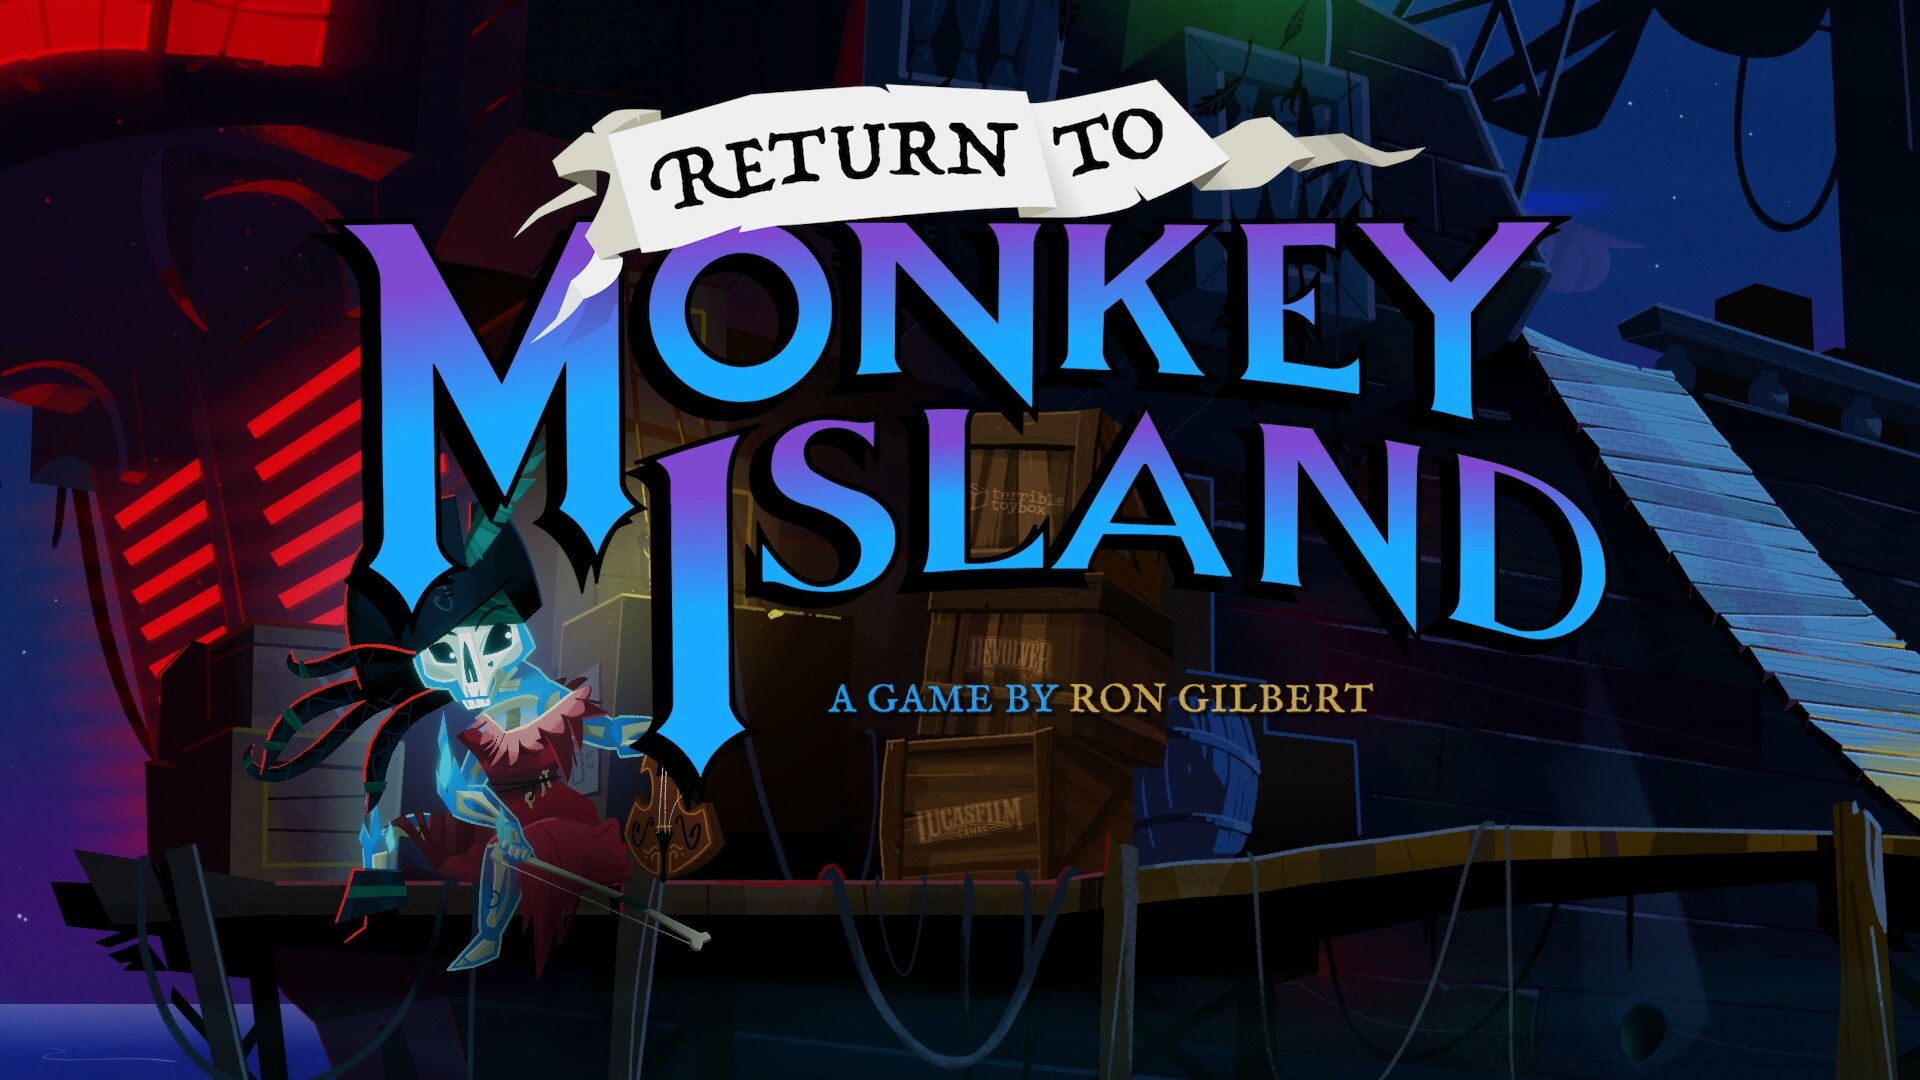 Είναι αλήθεια, το Return to Monkey Island έρχεται φέτος με την υπογραφή του Ron Gilbert